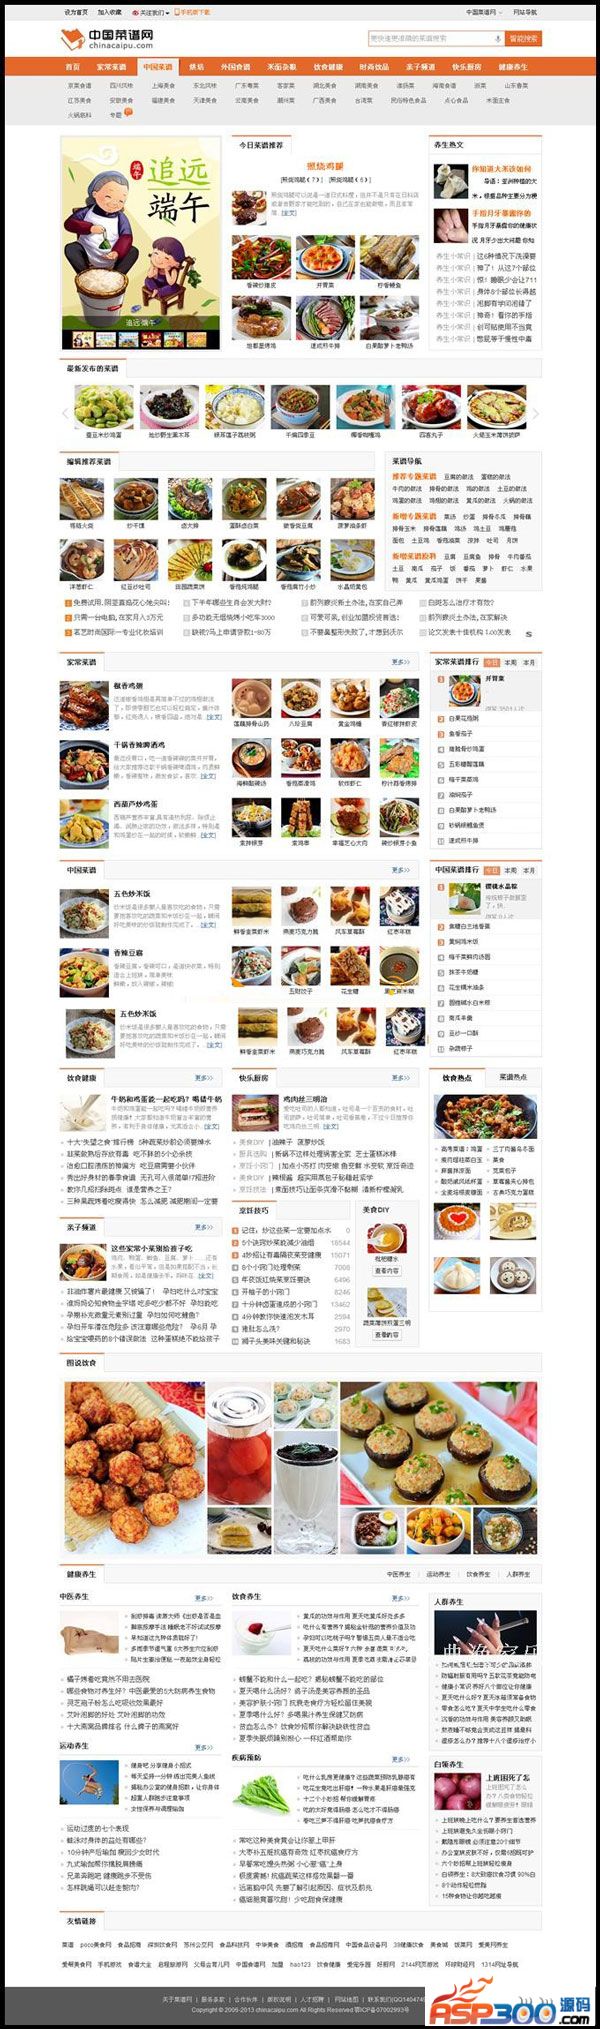 92GAME最新仿制中国菜谱网|烧菜网食谱网源码,帝国cms7.0内核+支持会员投稿+海量数据